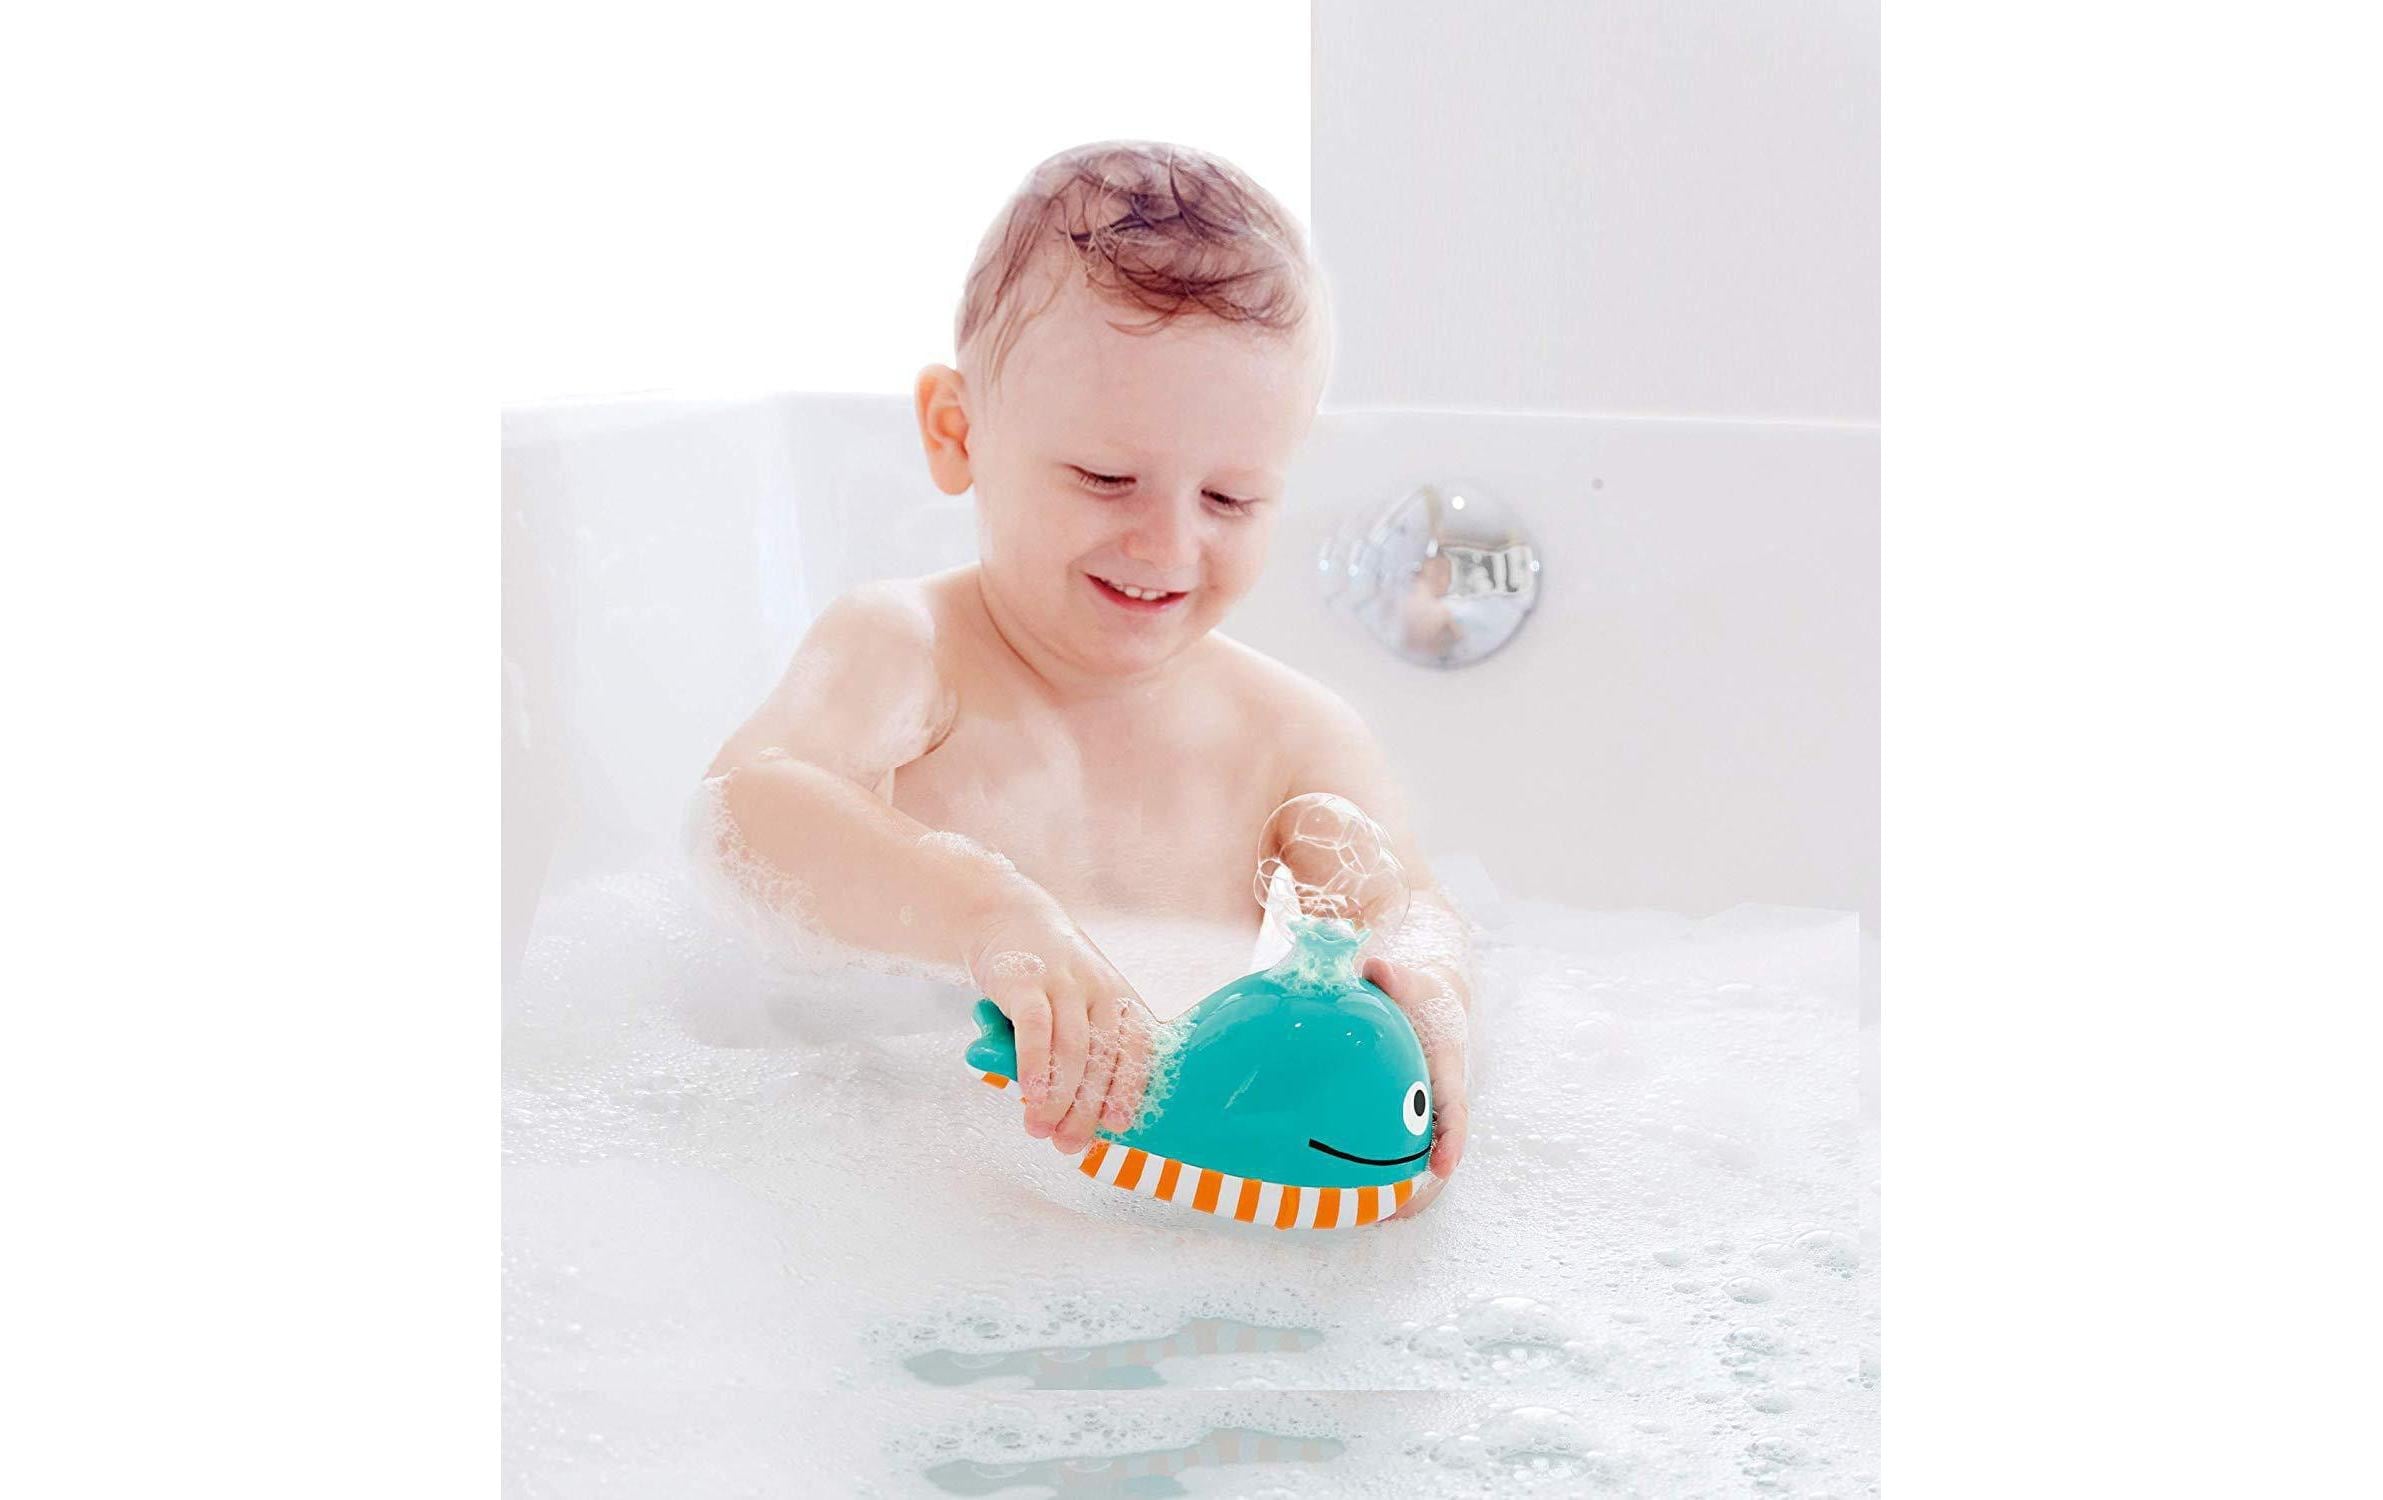 Hape Badespielzeug »Seifenblasen-Wal«